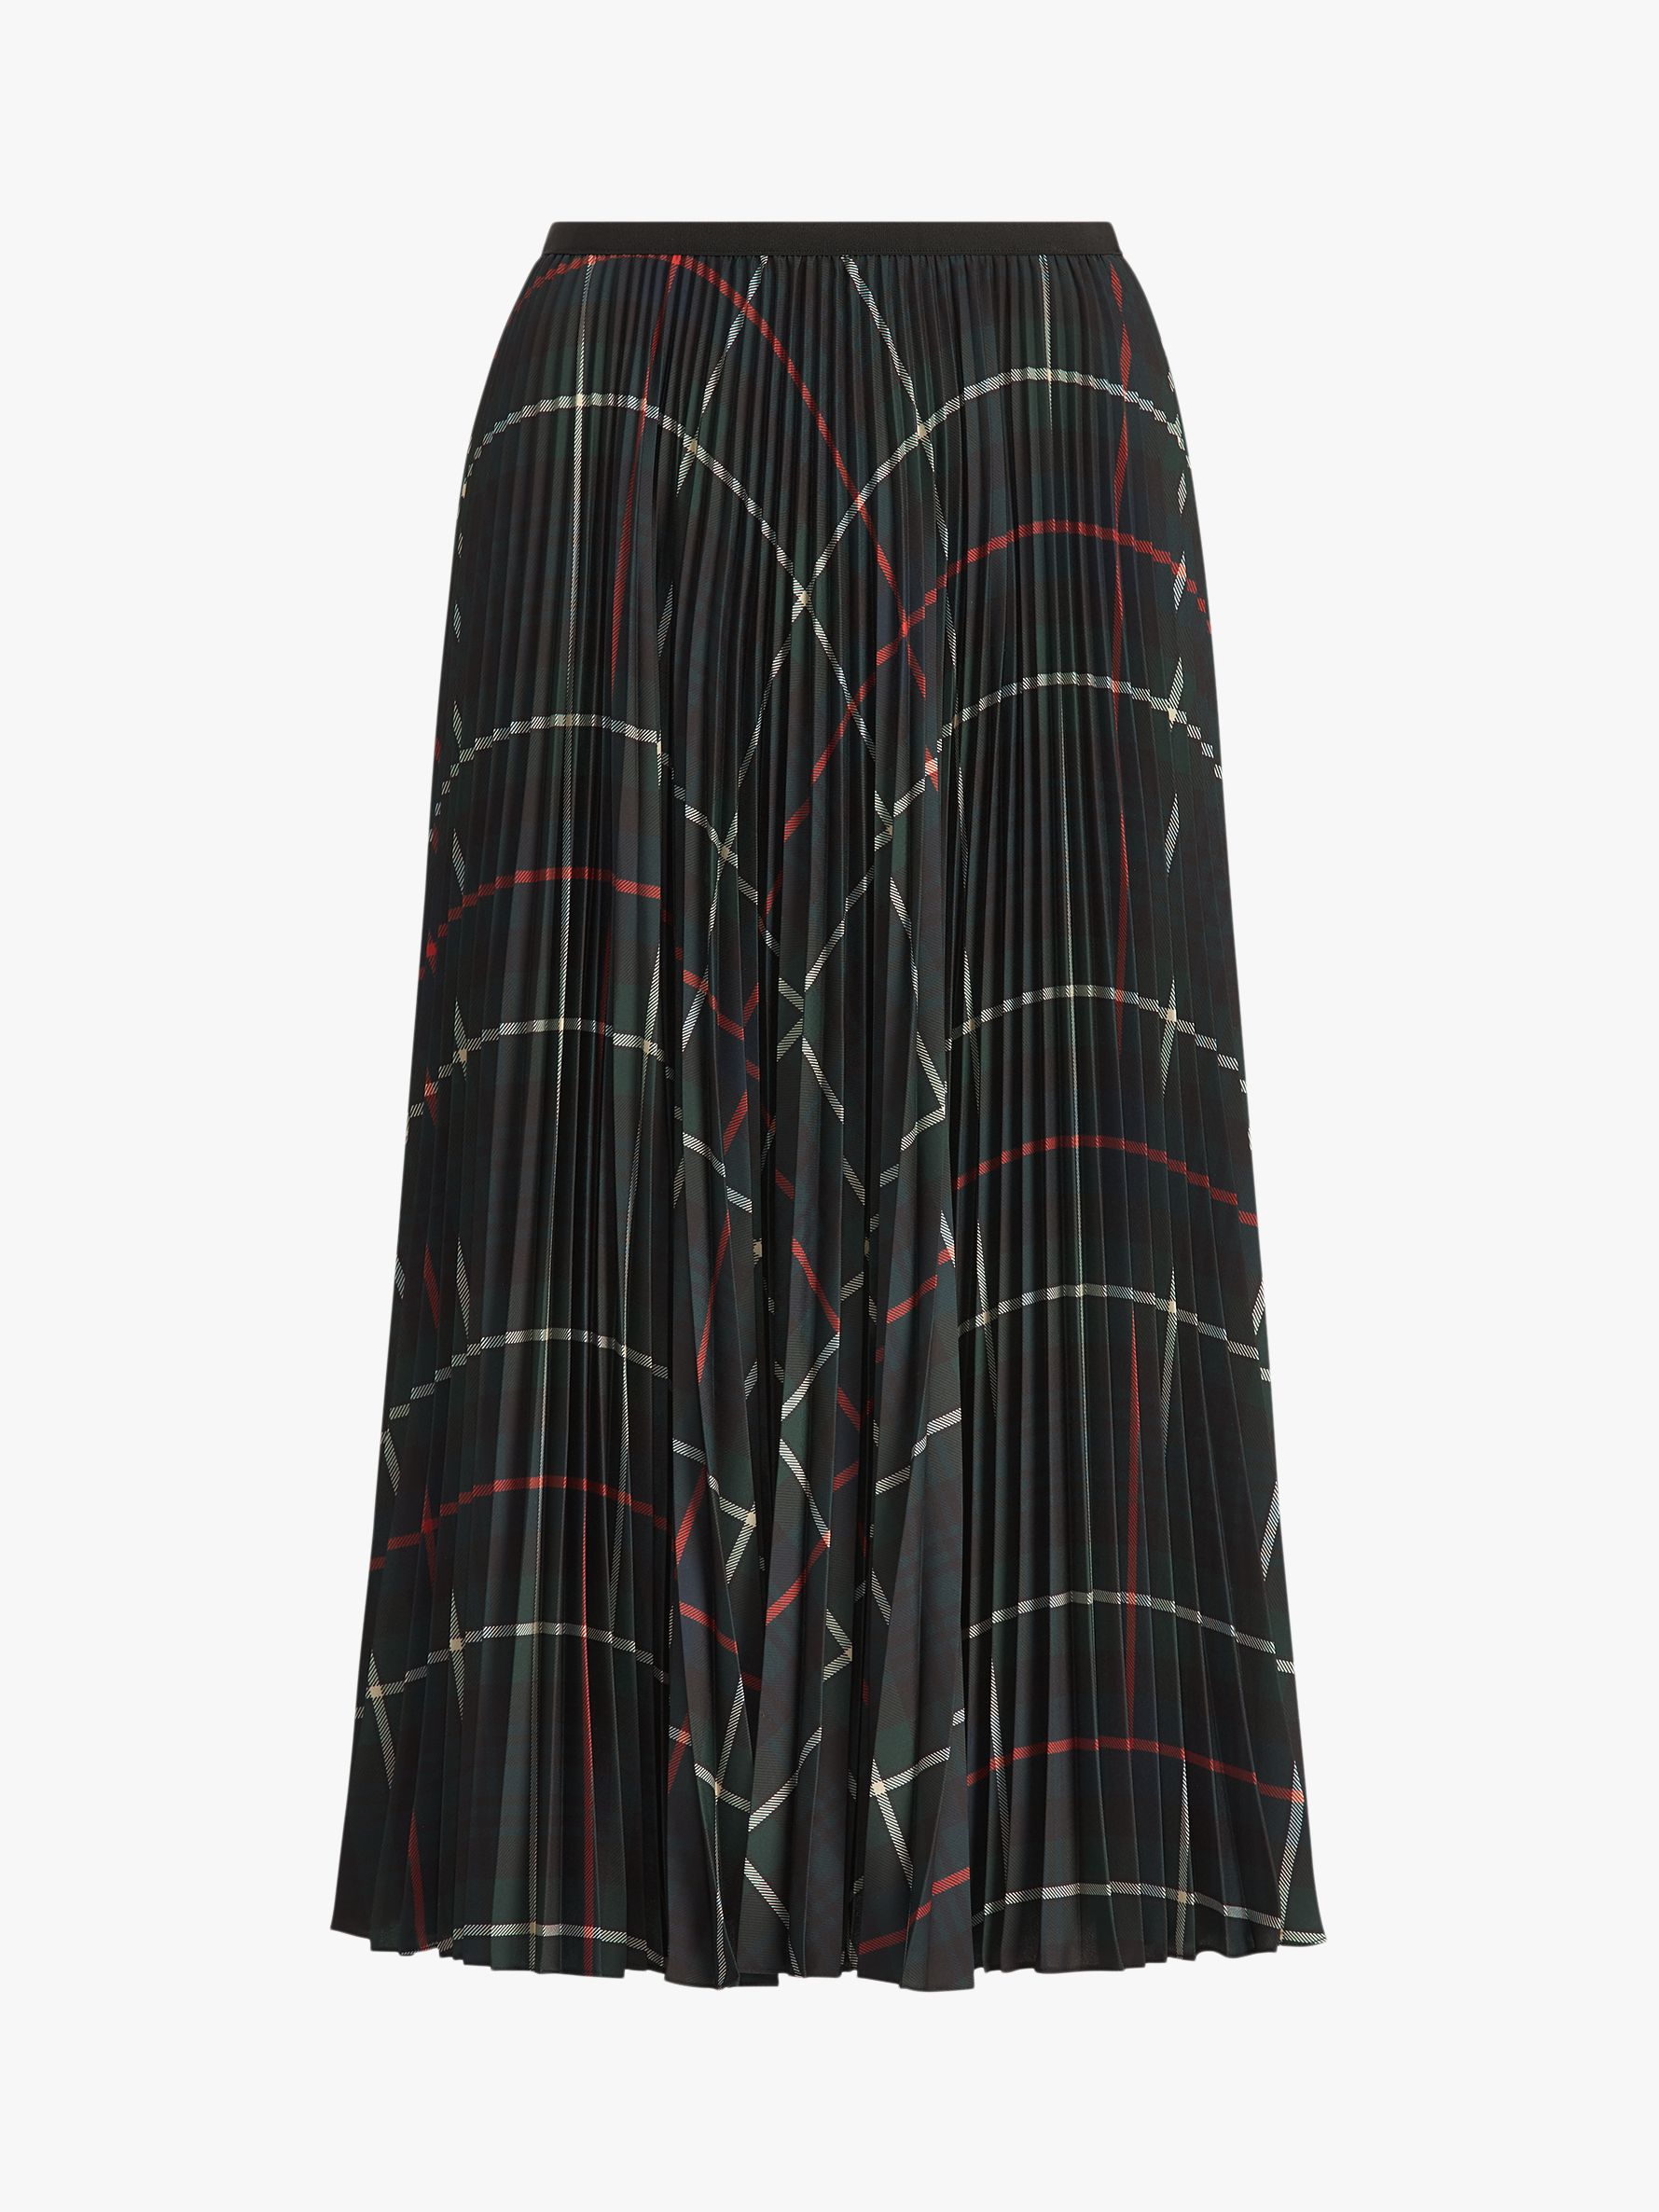 Polo Ralph Lauren Pleated Midi Skirt, Green Tartan, XS